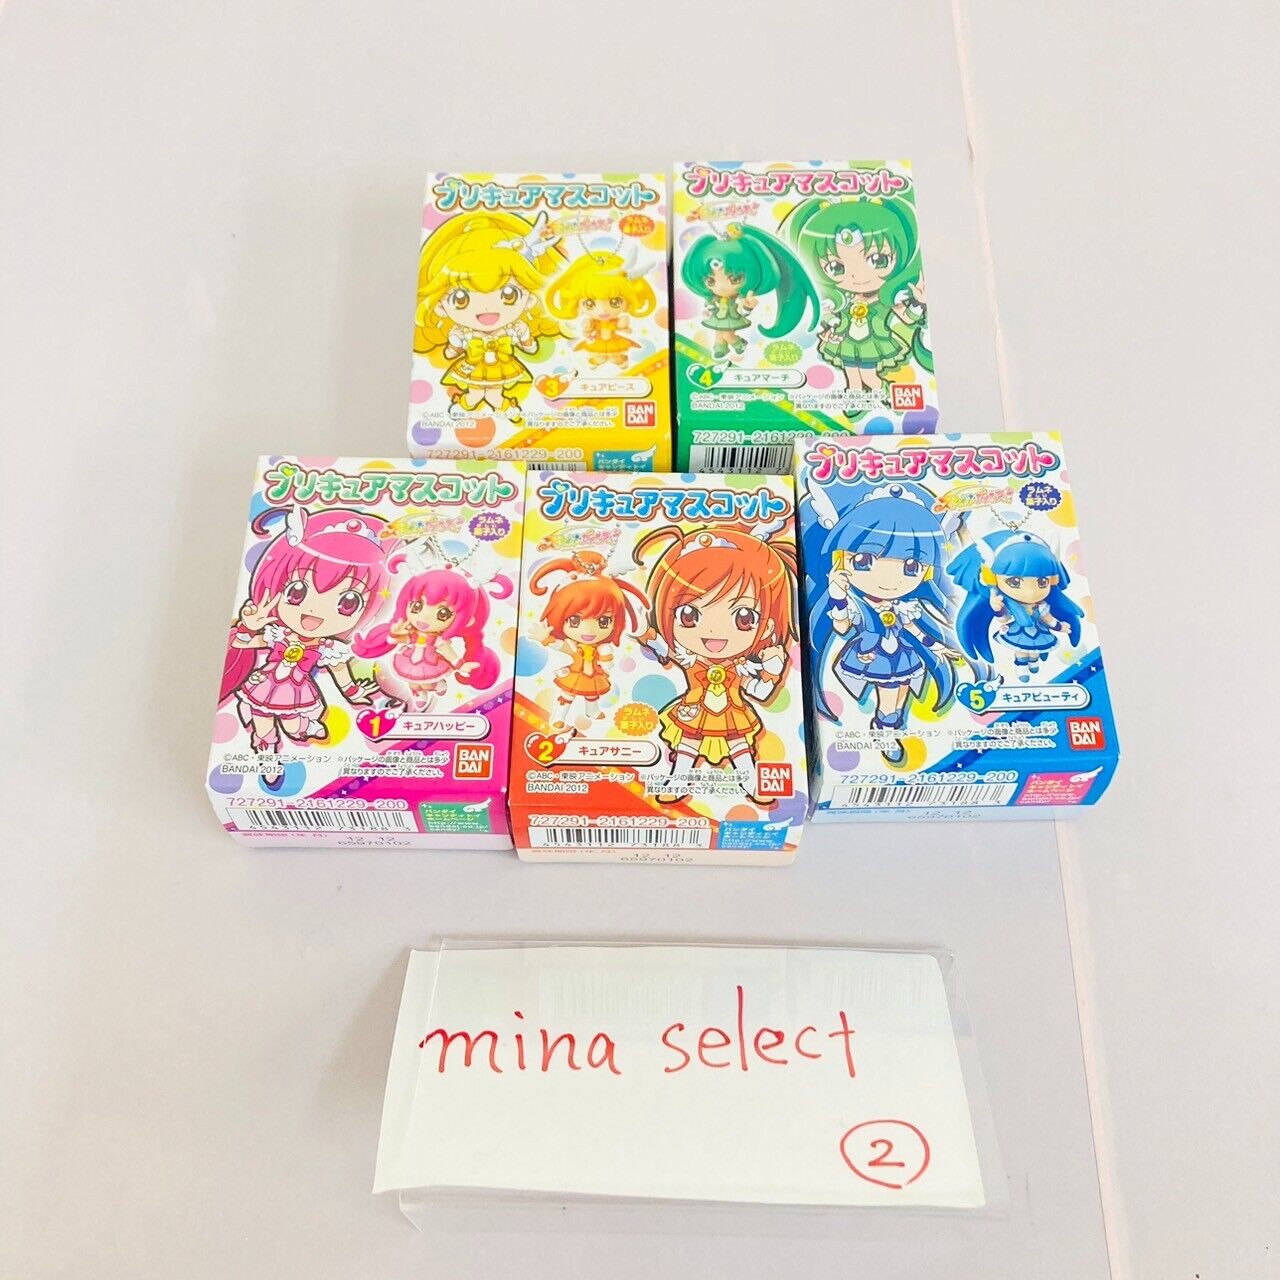 Glitter Force Smile Precure Precure Mascot Mini Figure 5 Set Pretty Cure BANDAI